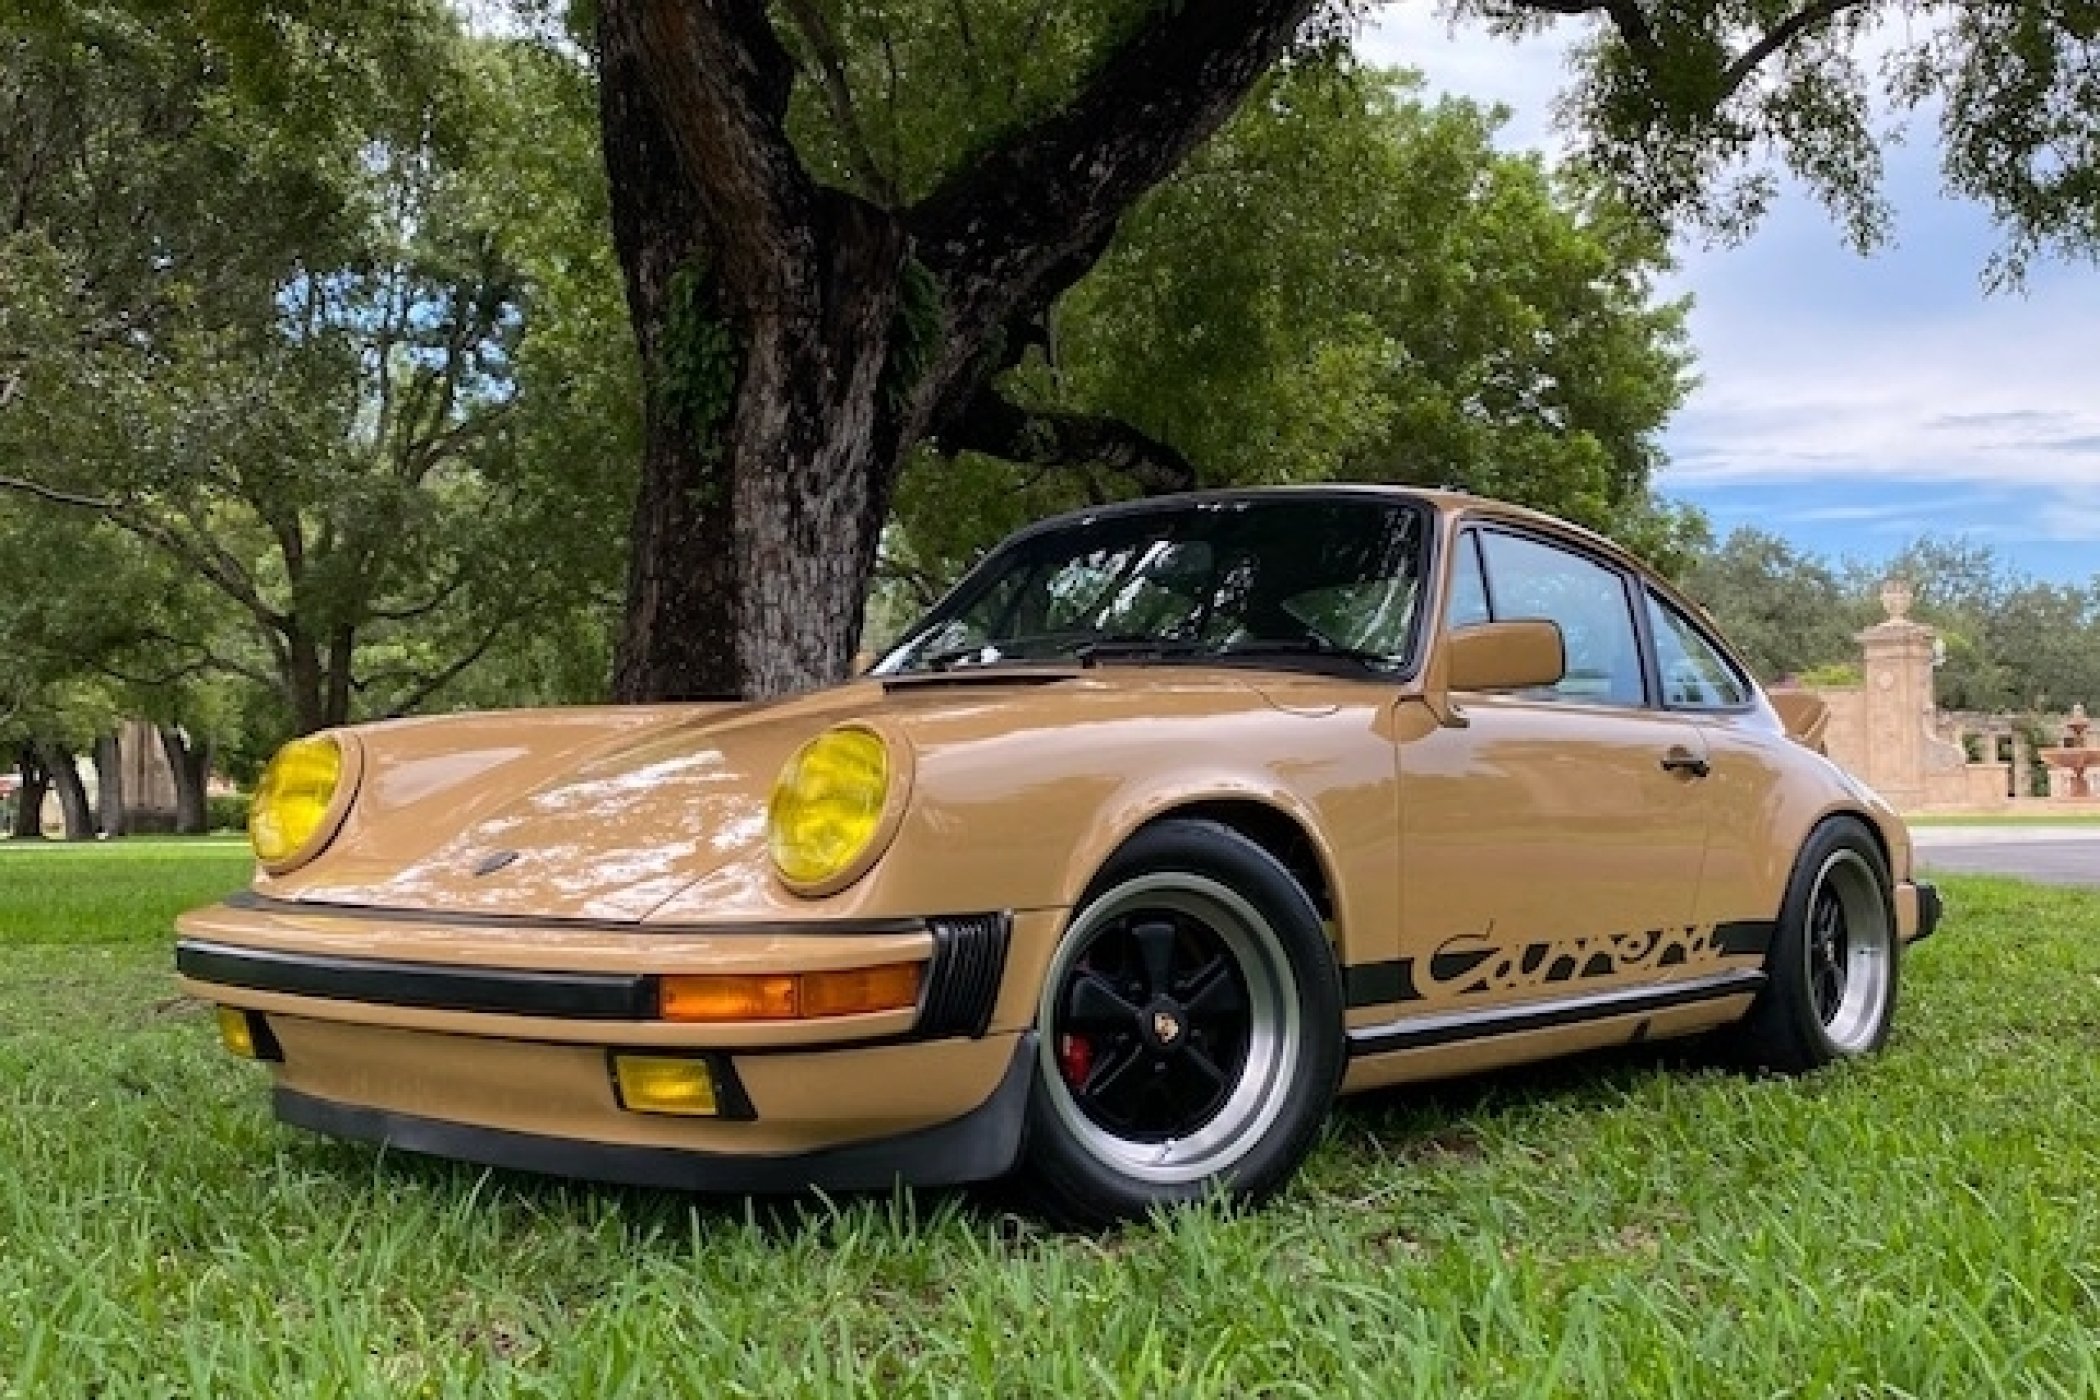 1978 Porsche 911SC